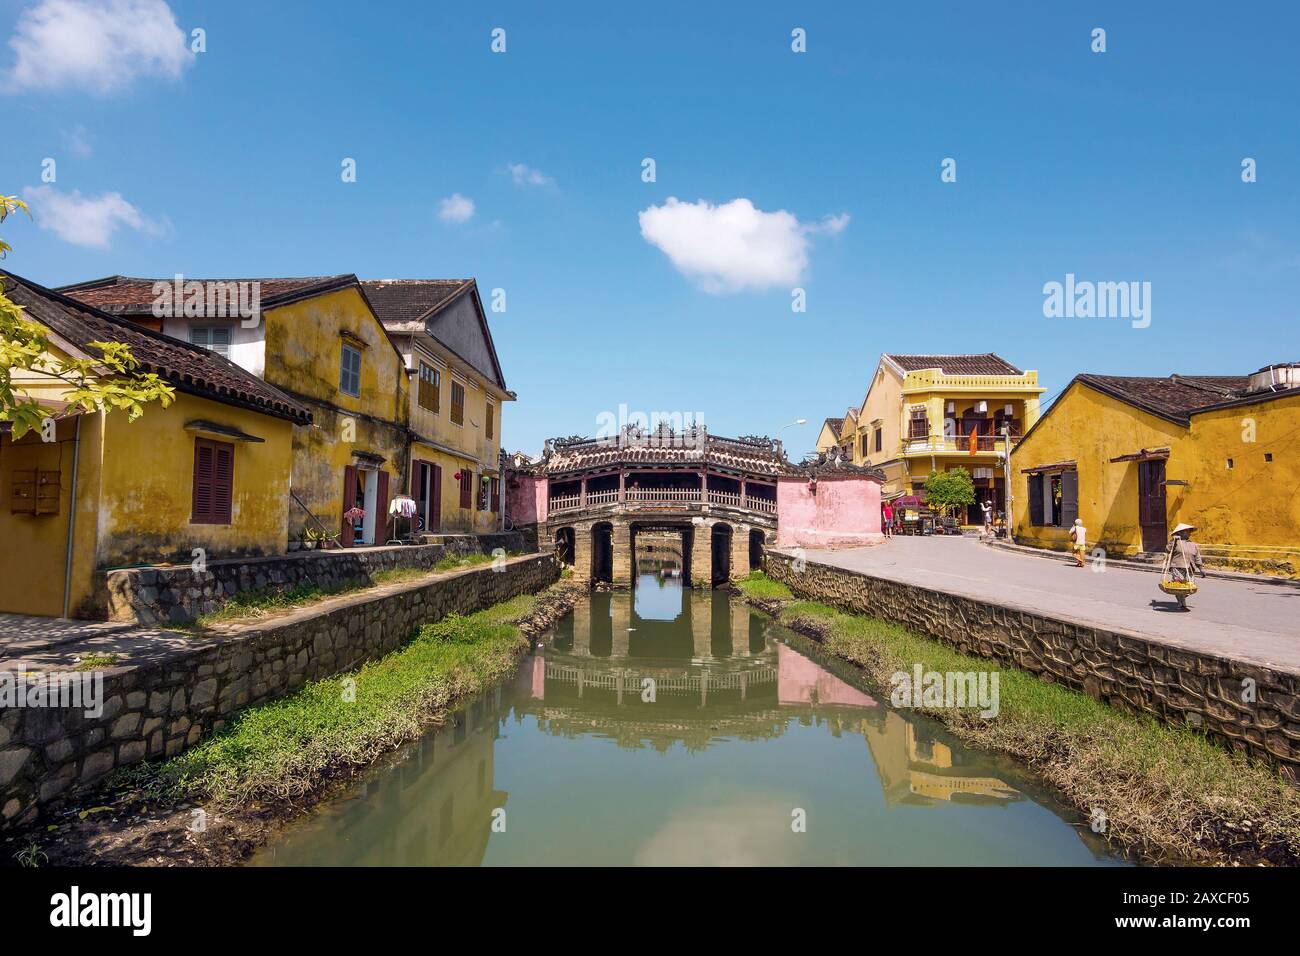 Pont couvert japonais dans l'ancienne ville de Hoi An, au Vietnam. Banque D'Images